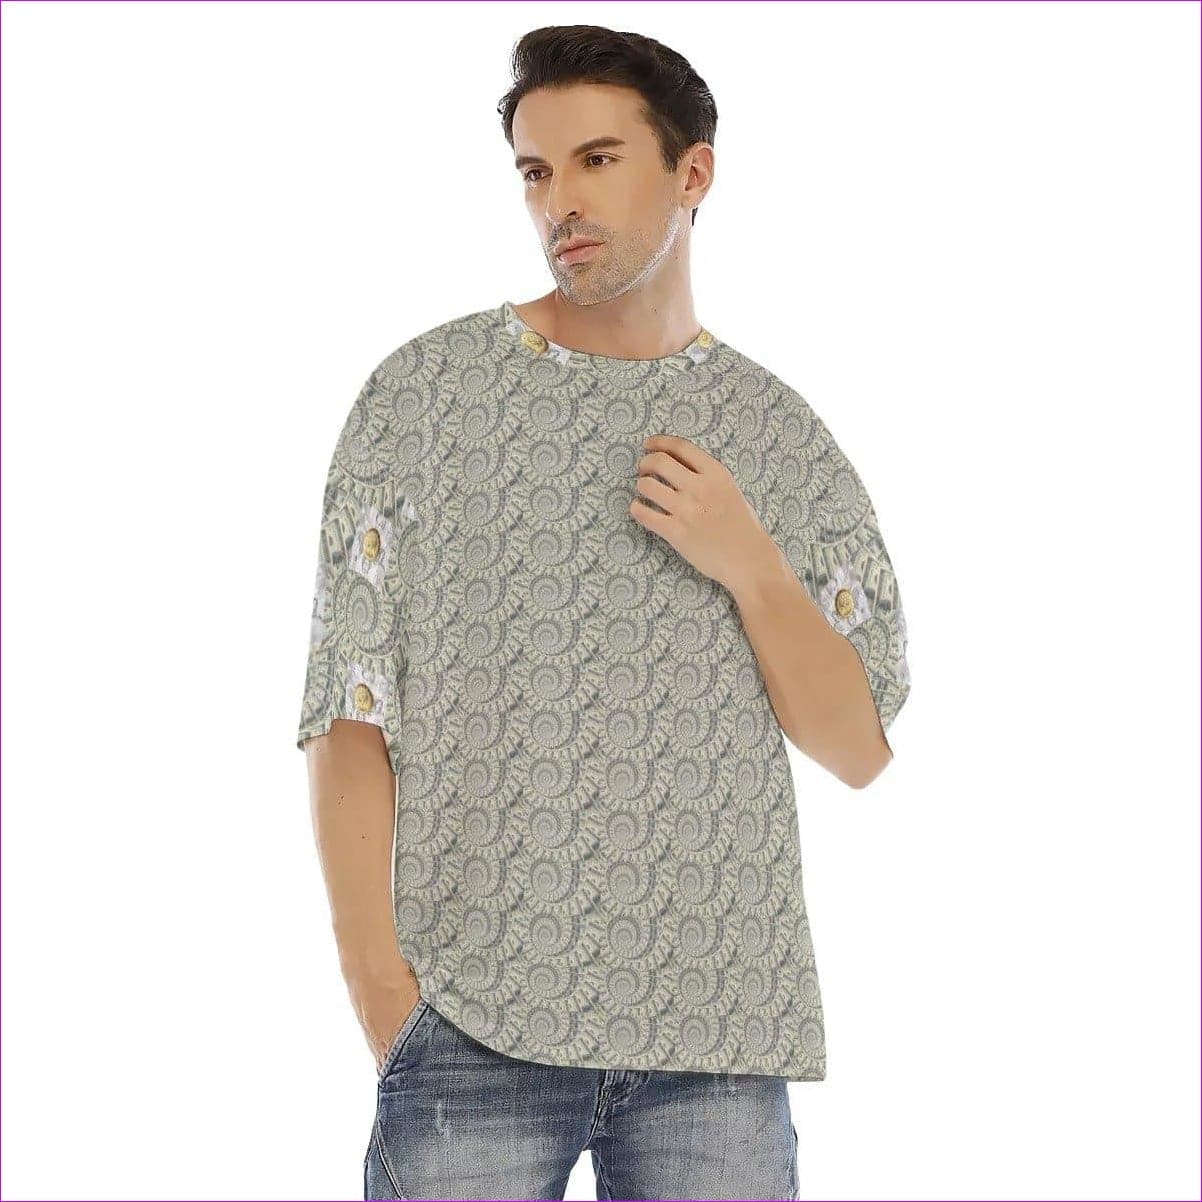 Khaki Cash Men's Drop Shoulder T-shirt With Short Sleeve - men's t-shirt at TFC&H Co.